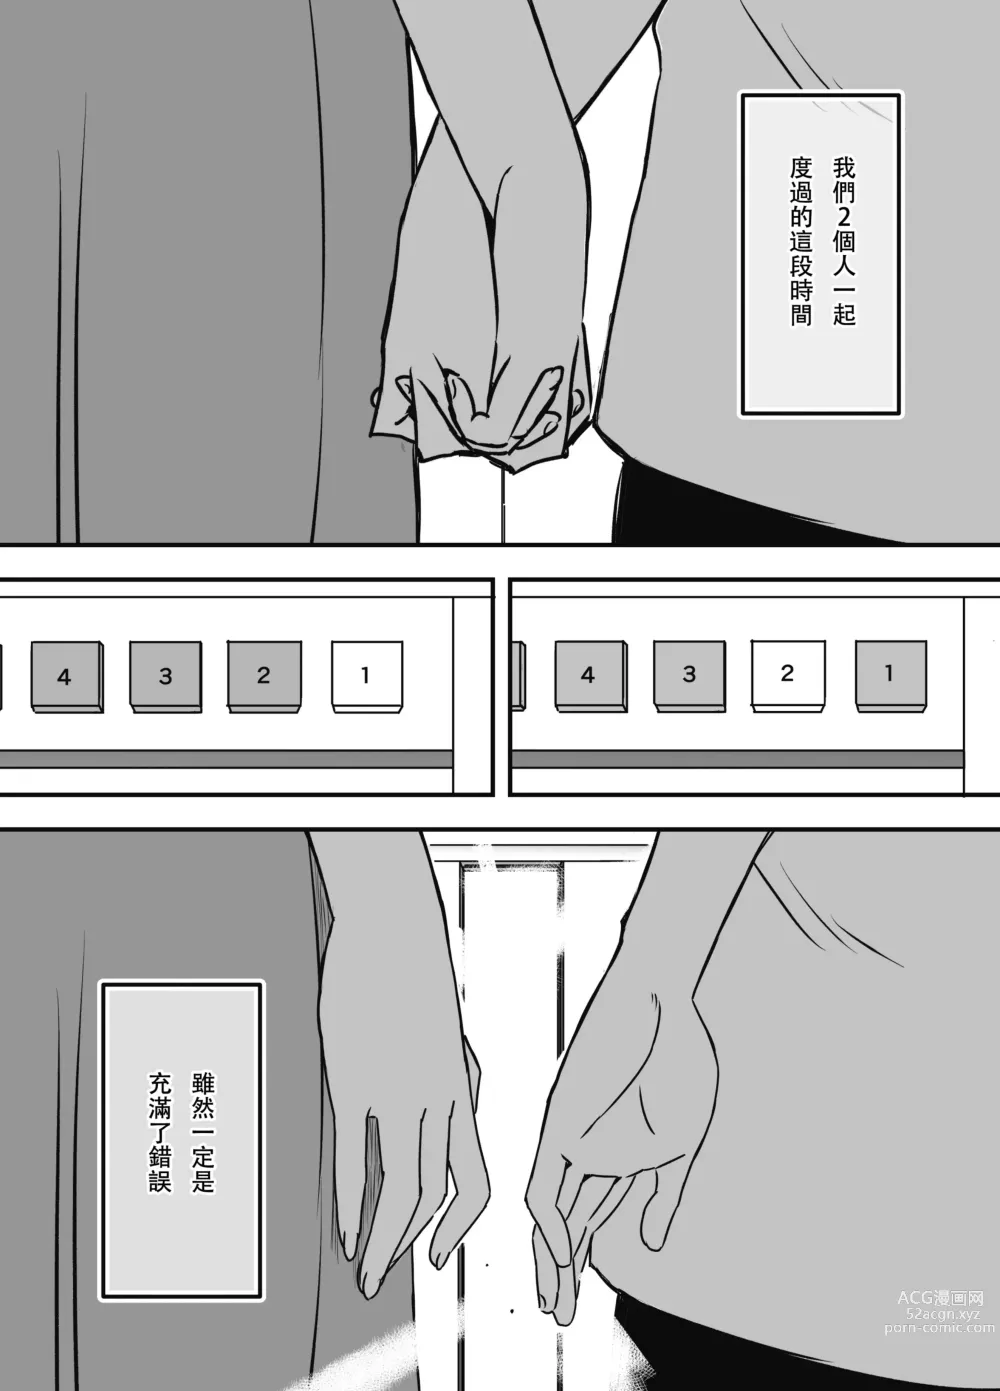 Page 80 of doujinshi Giri no Ane to no 7-kakan Seikatsu - 7